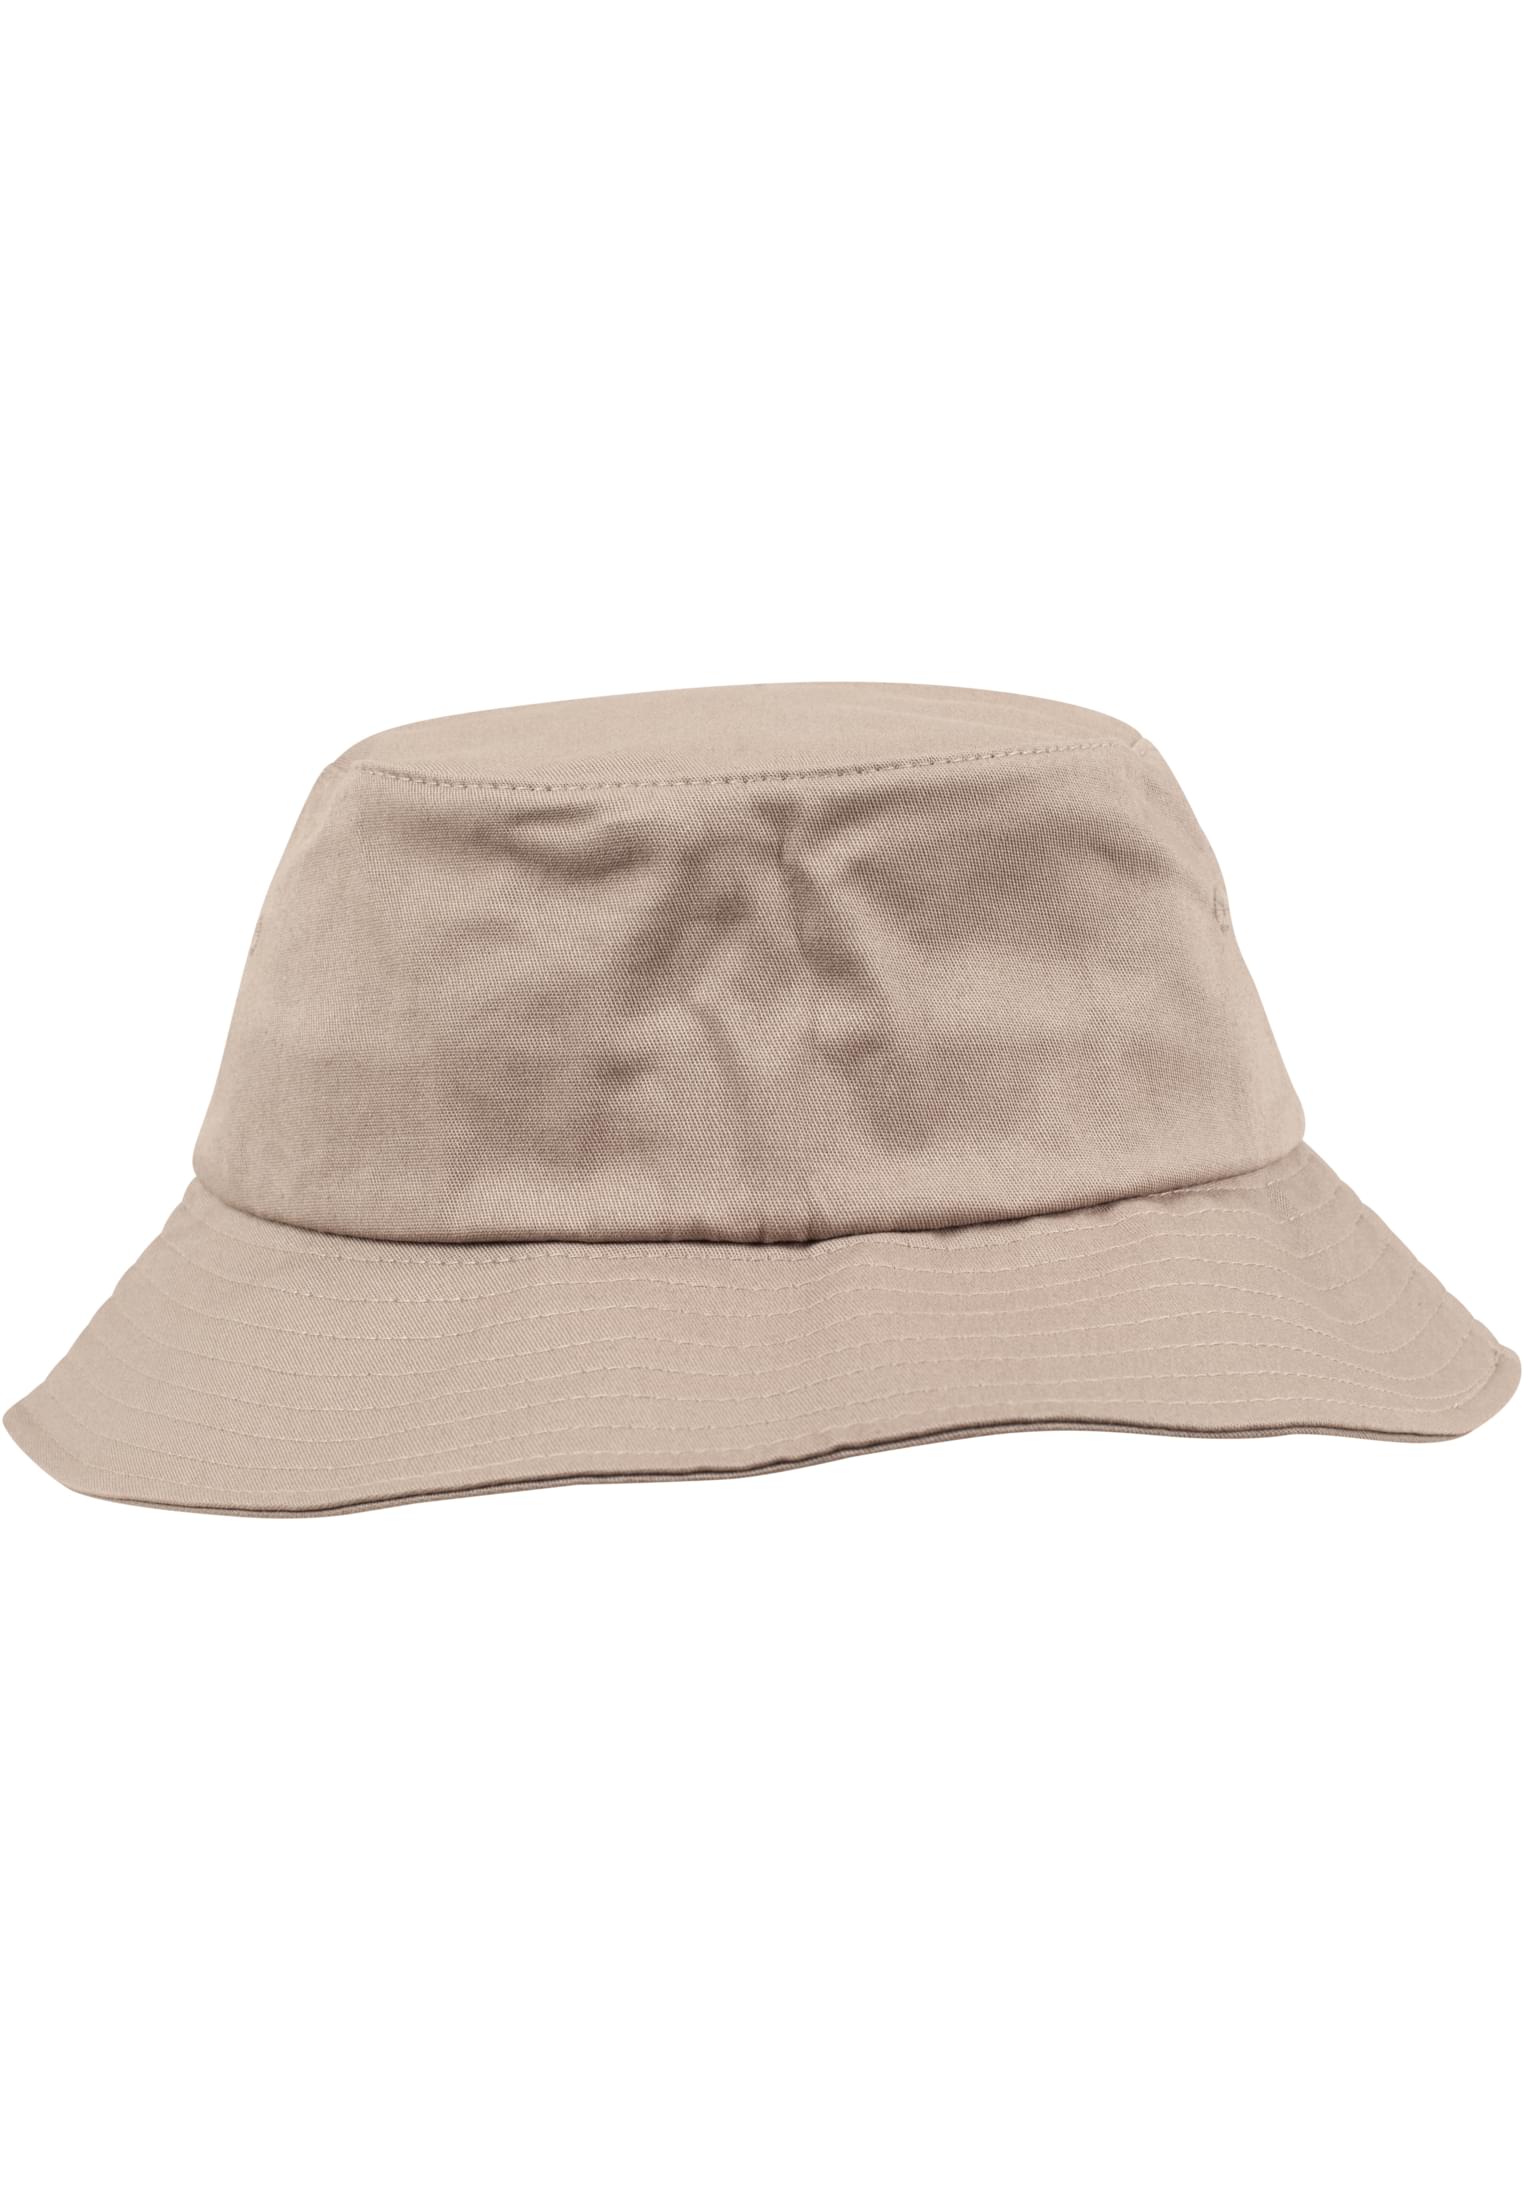 Flexfit Bucket Cotton Hat-5003 Twill